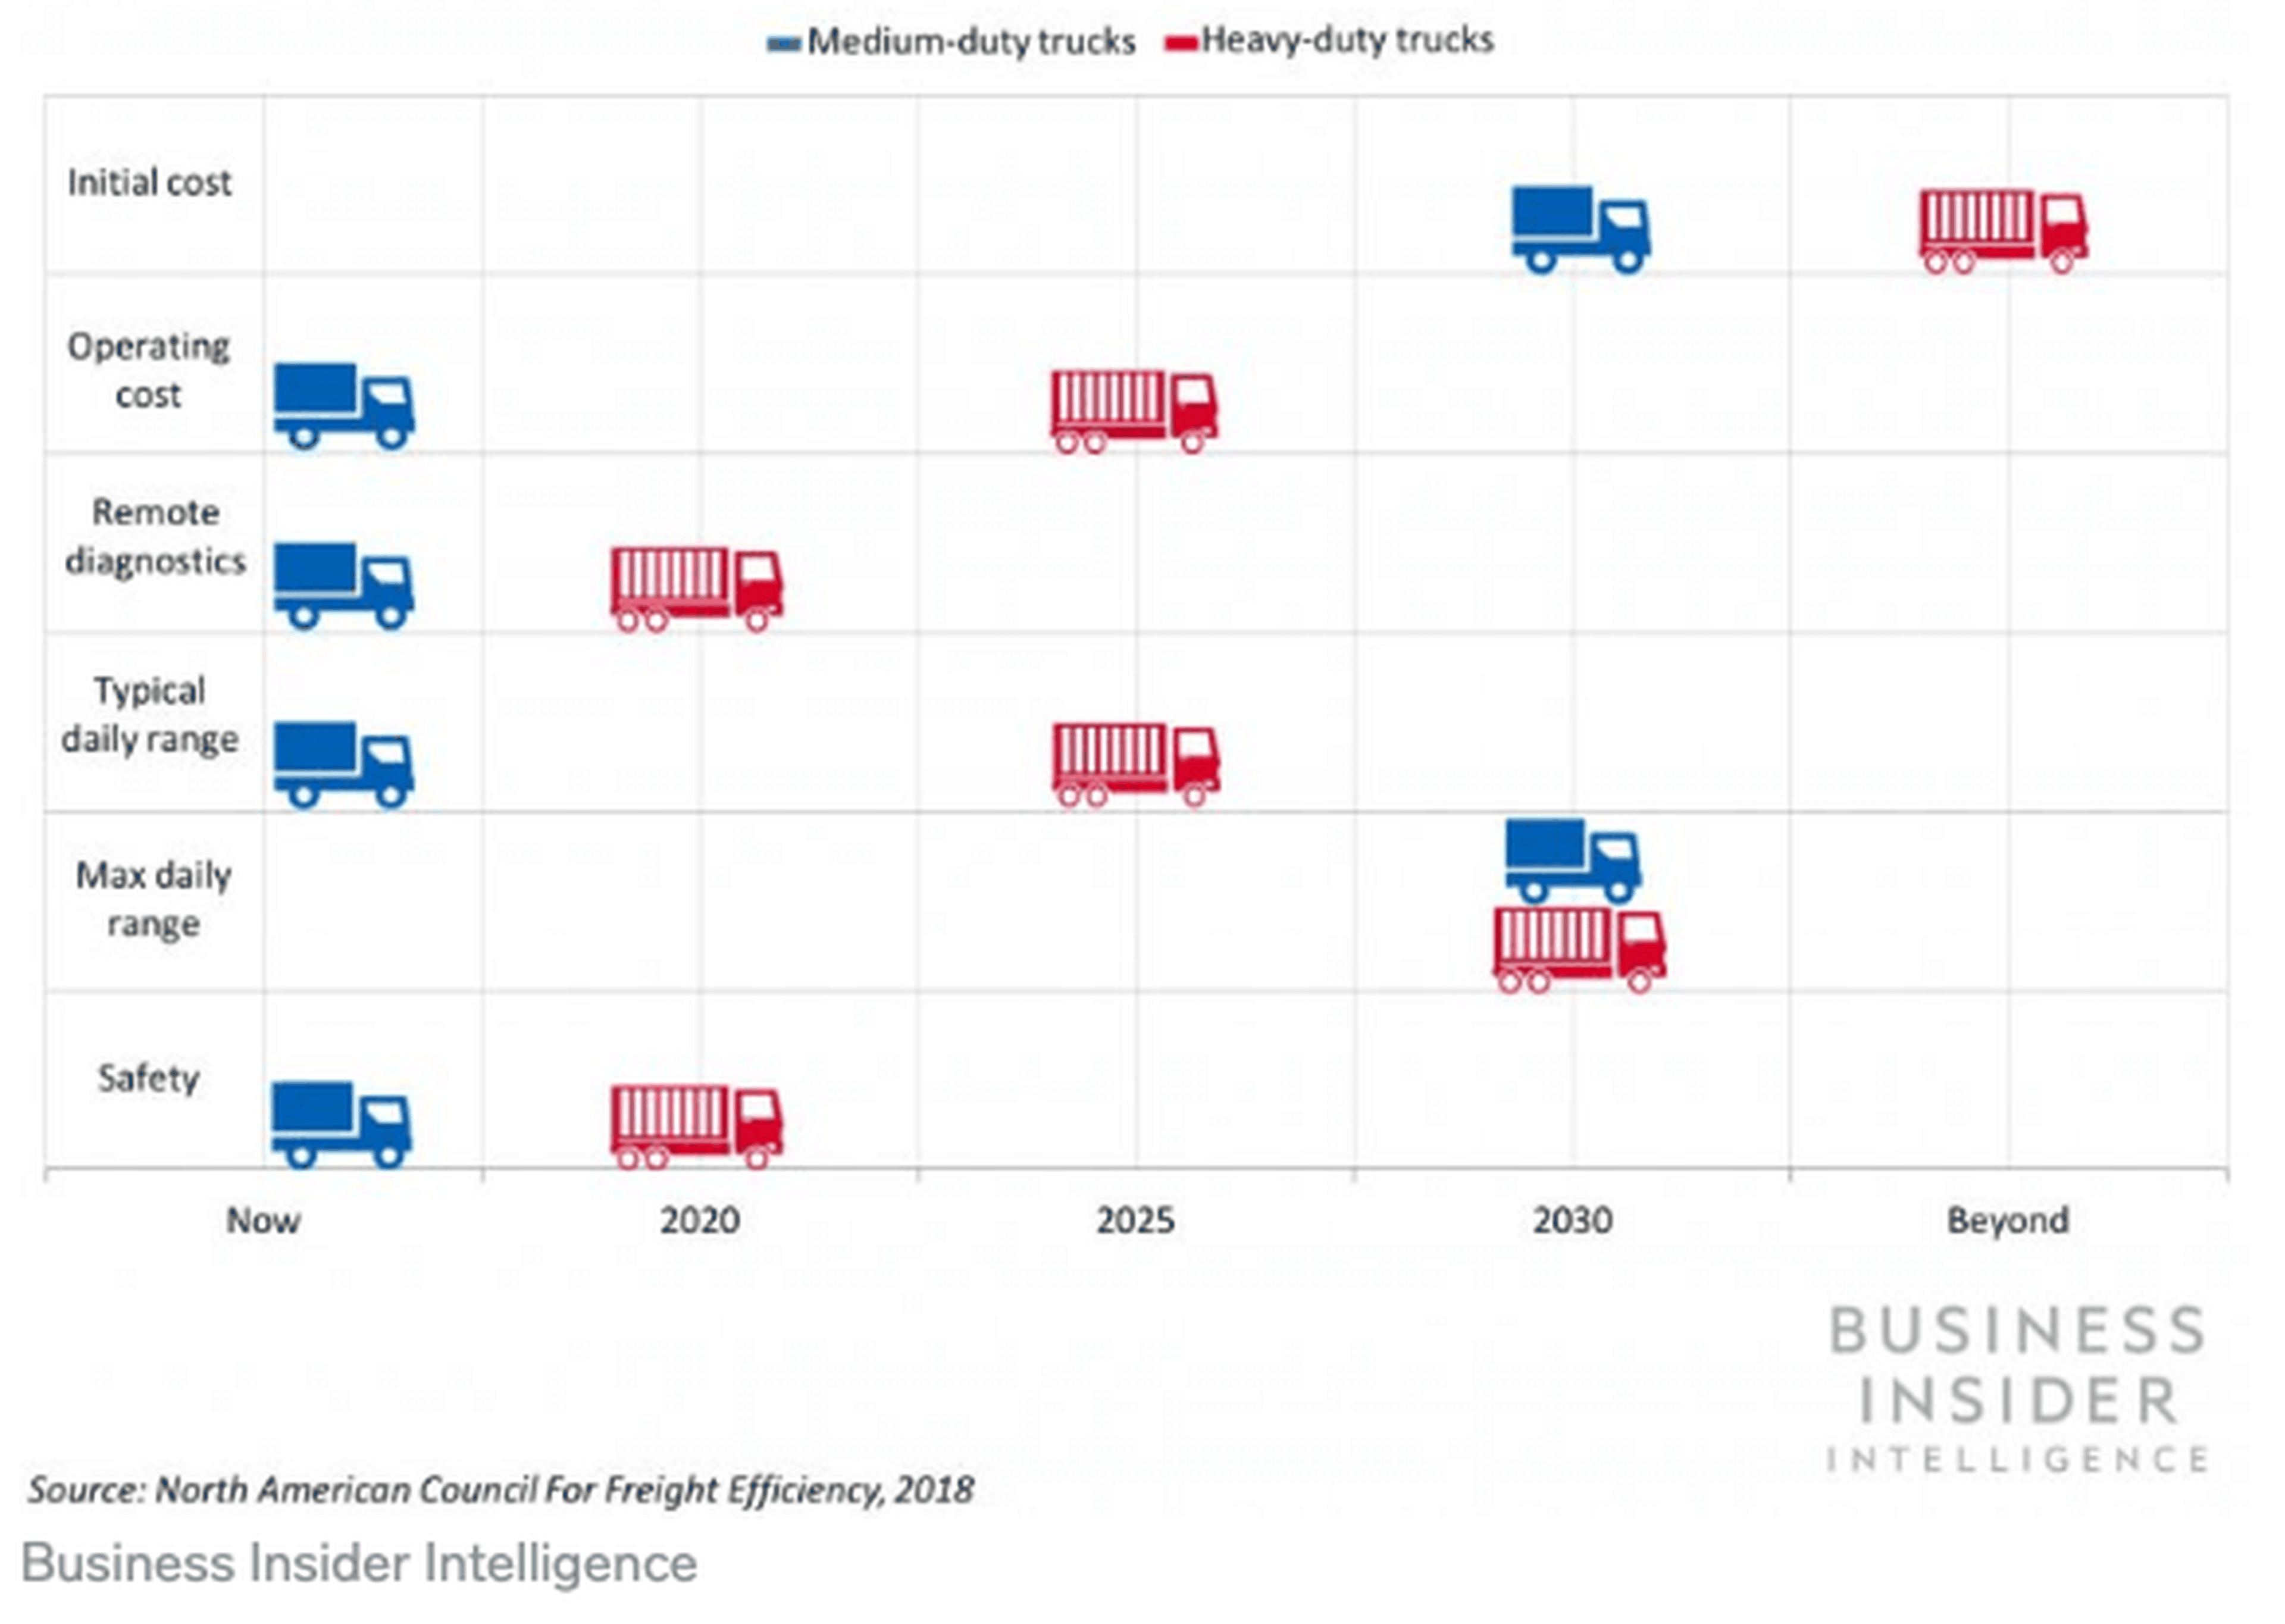 Evolución comparativa del camión diesel vs eléctrico durante las próximas décadas.